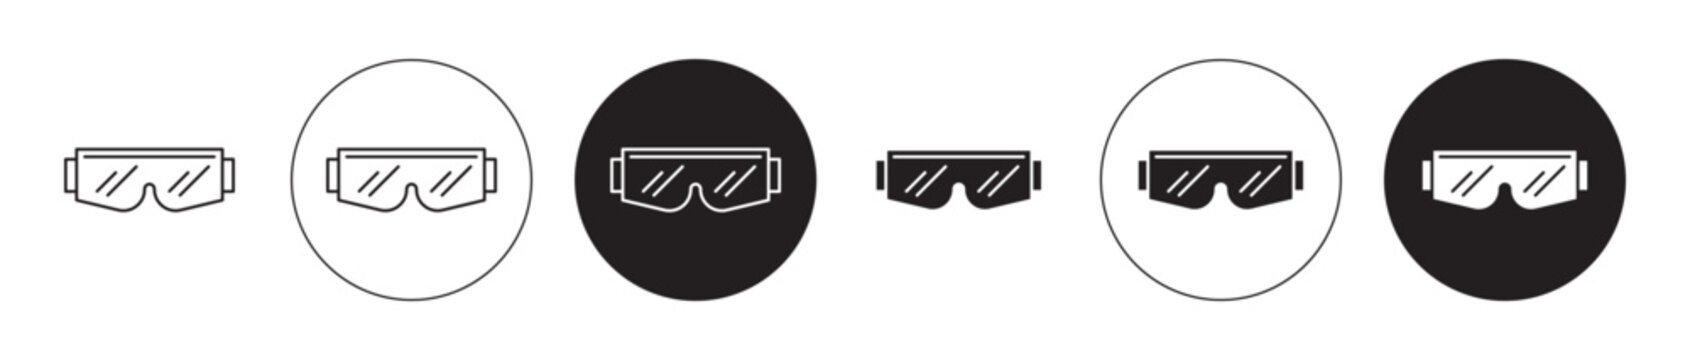 Ski Goggles vector illustration set. Ski eye safety protection goggles vector illustration symbol in black color